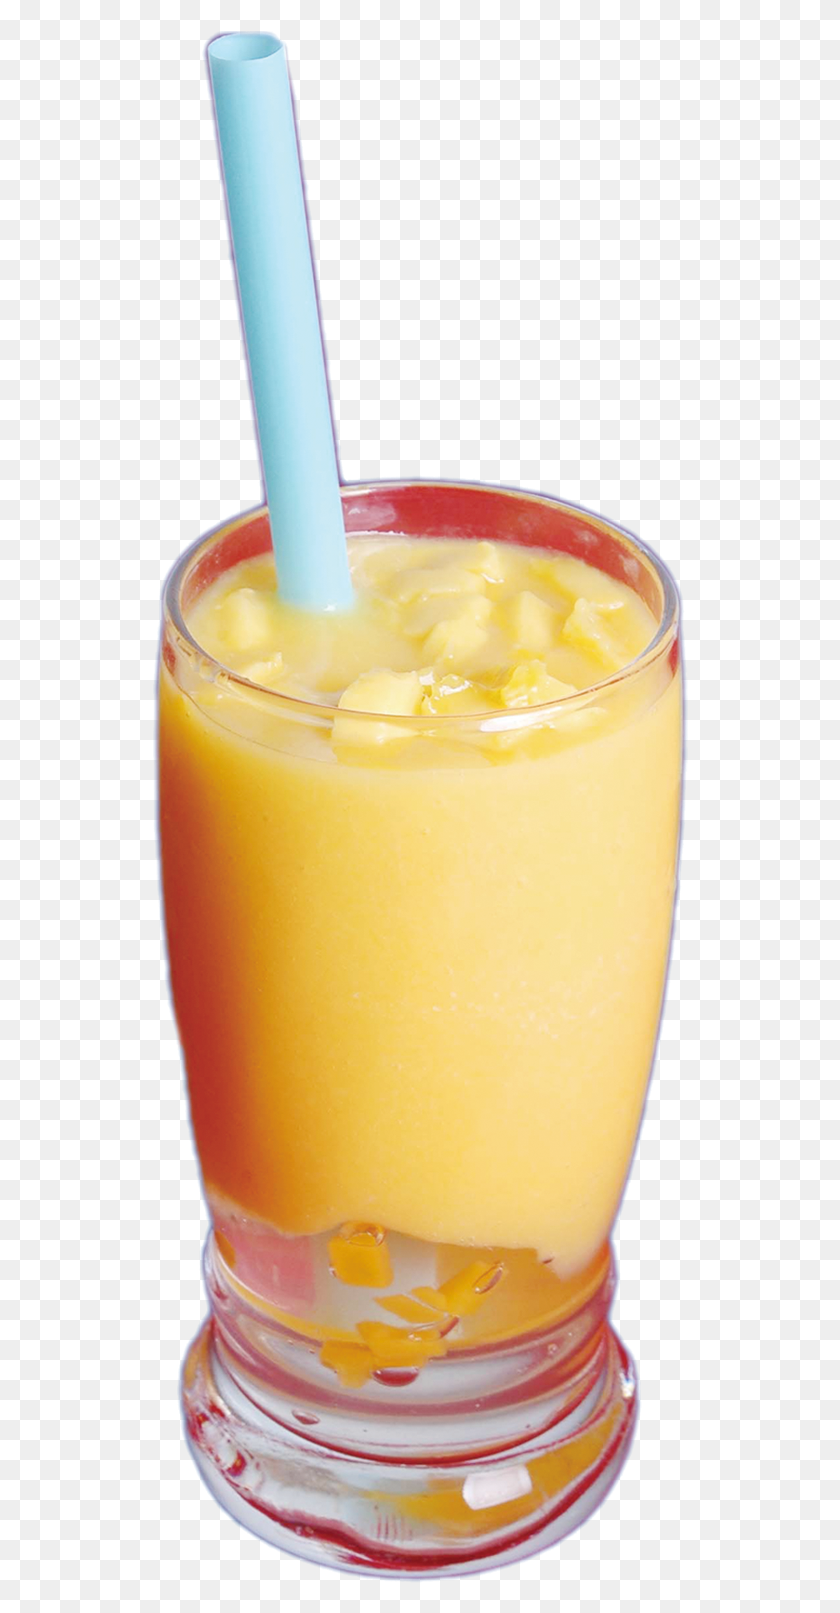 536x1553 Bebida De Mango Bebida De Naranja, Jugo, Bebidas, Batido Hd Png